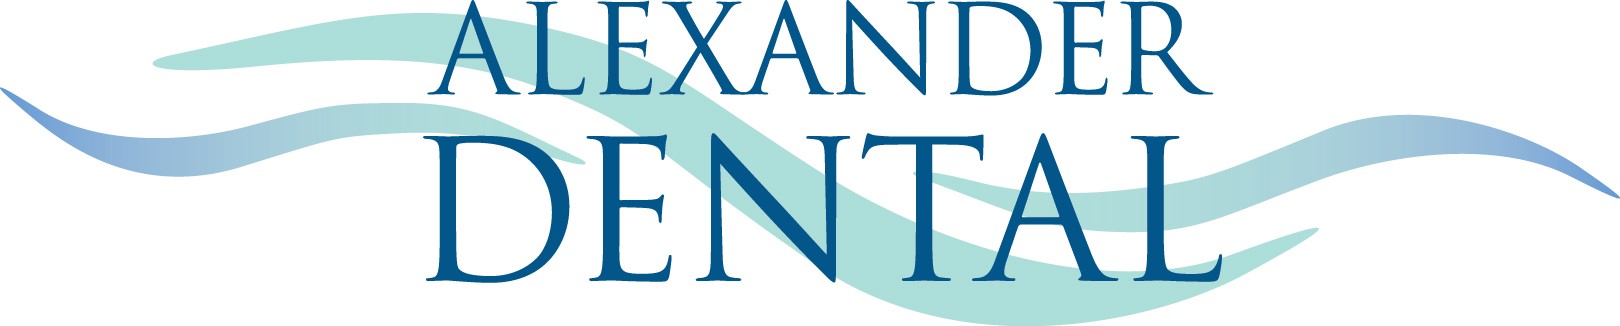 alexander dental logo